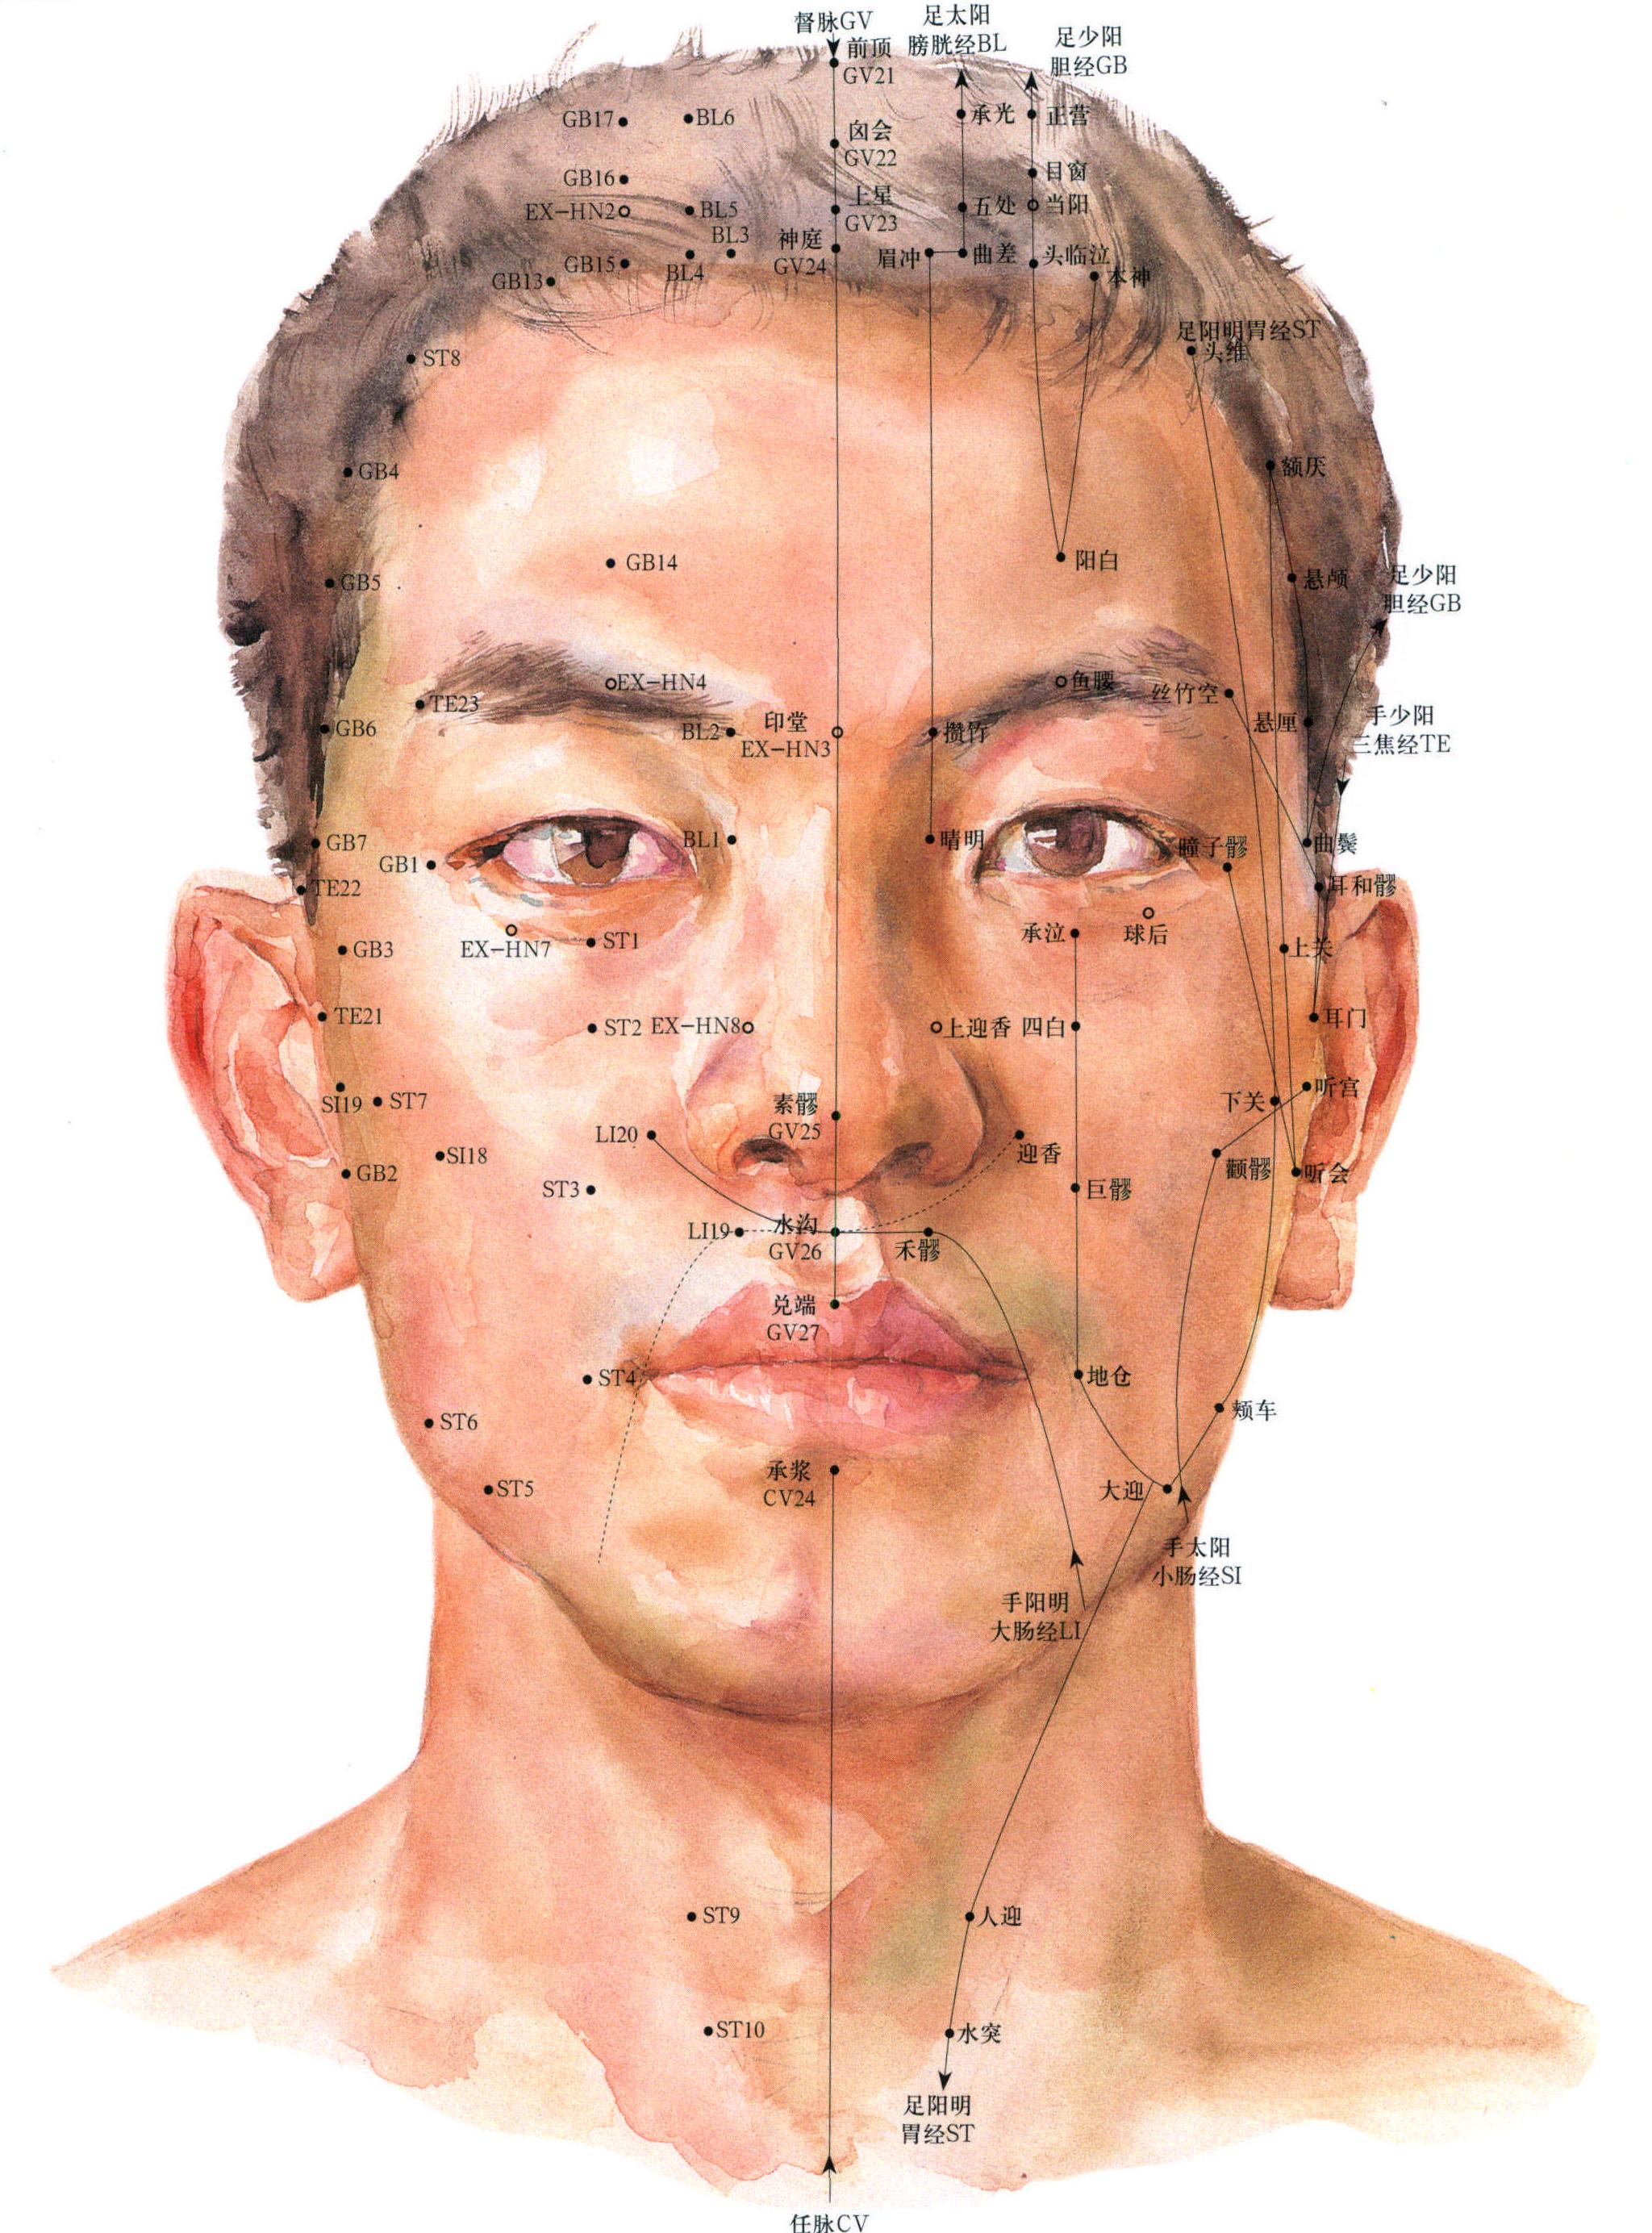 4. 头面颈部的皮肤与腧穴 (前面)